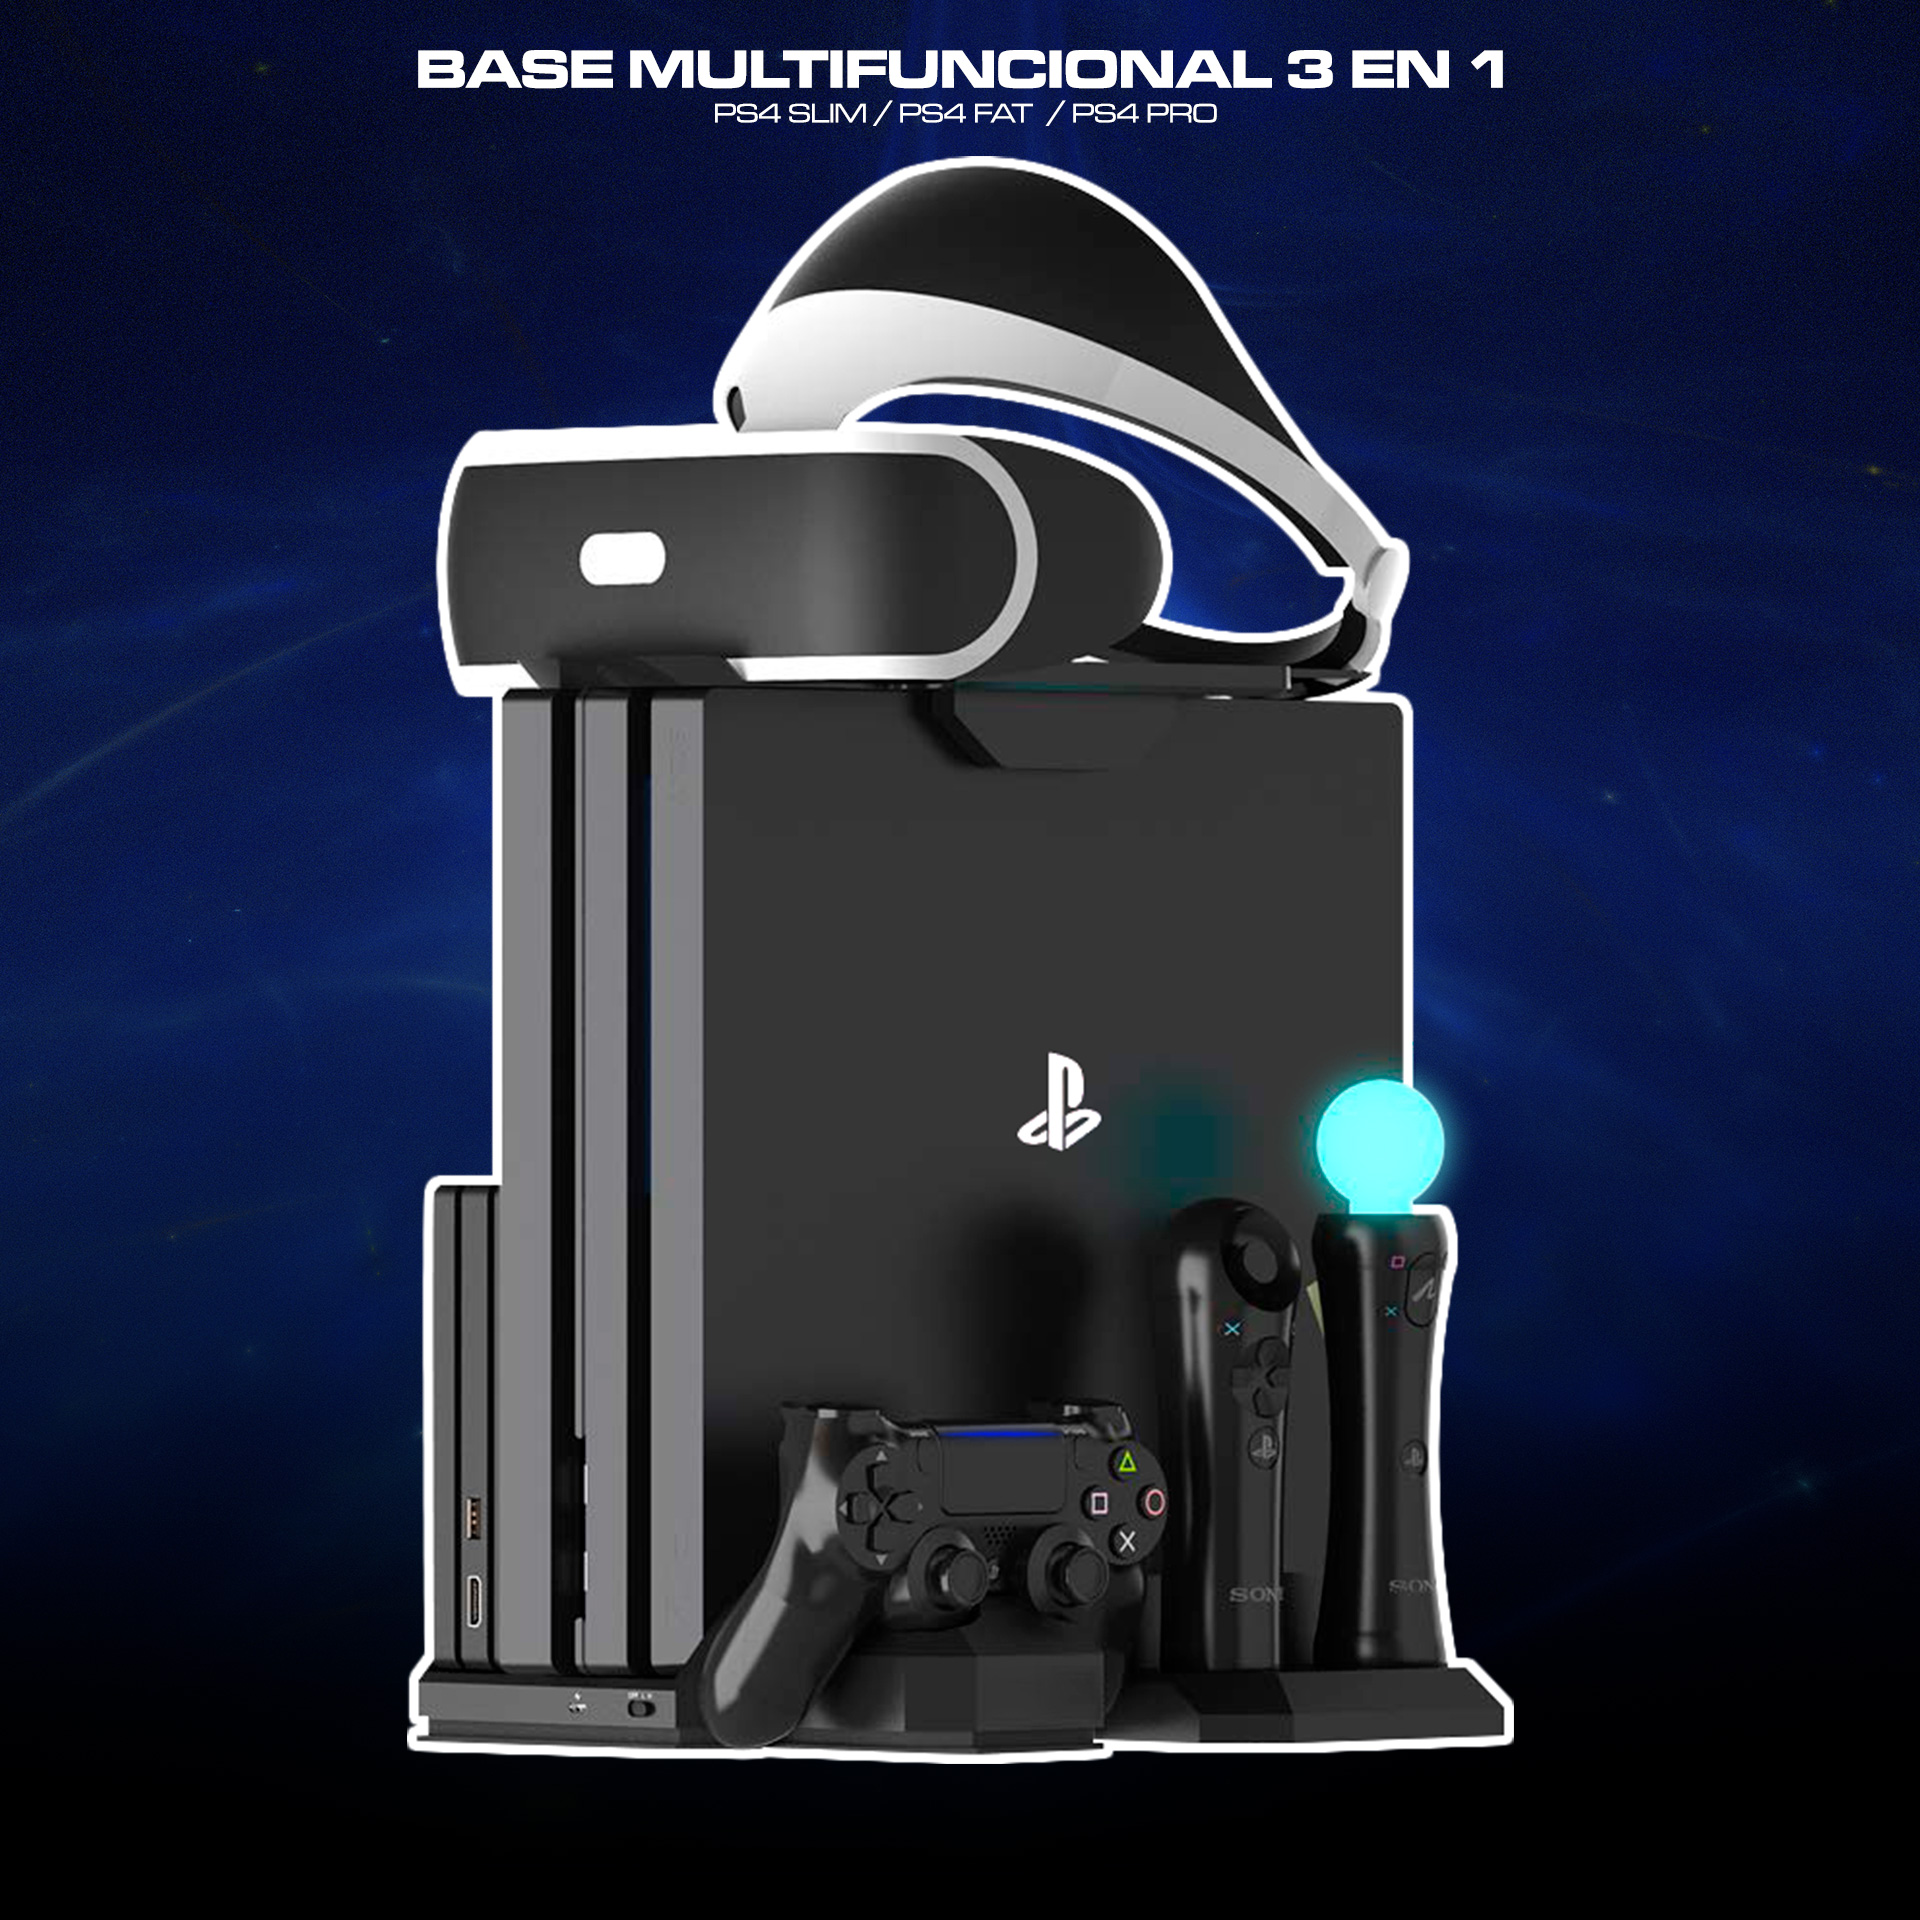 Soporte de Celular para Mando PS4 Dualshock 4 Fat/Slim/Pro - RAC STORE